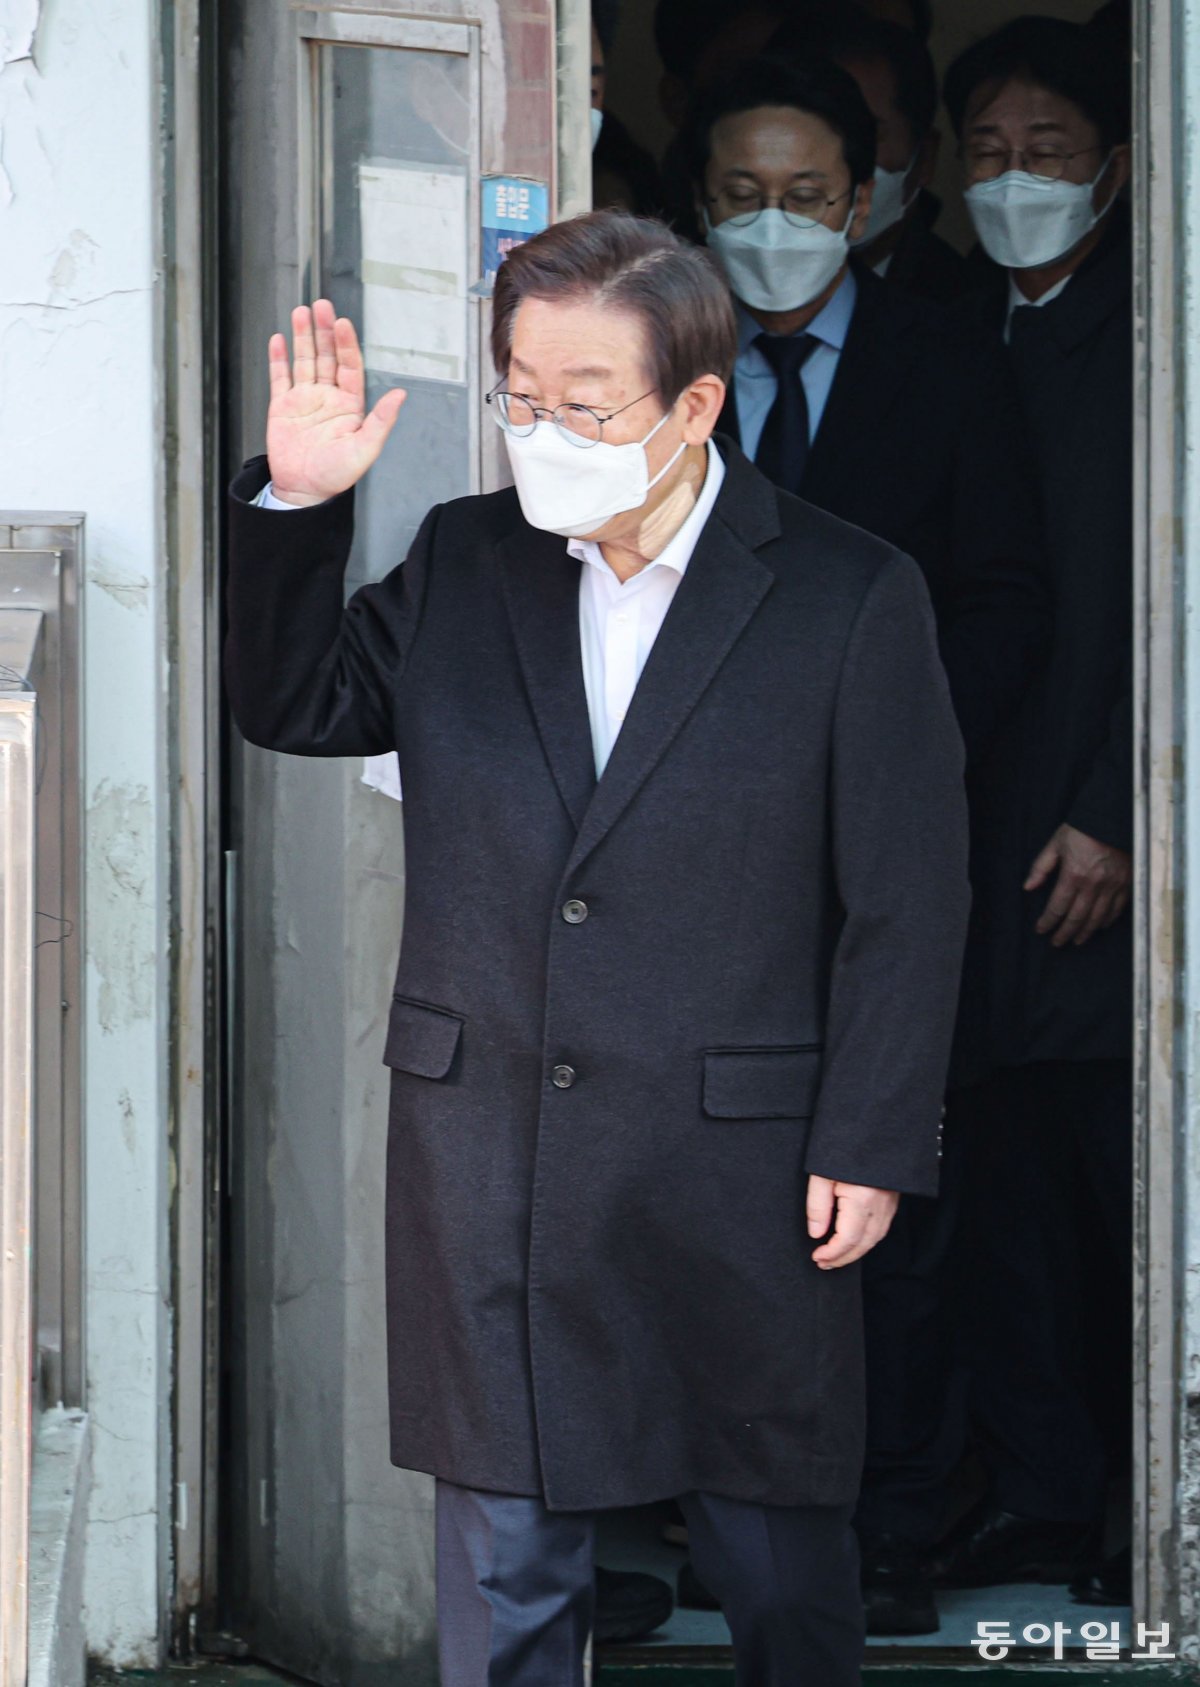 10일 이 대표가 서울대병원에서 걸어 나오며 포토라인 너머 지지자들에게 손을 흔들고 있다. 박형기 기자 oneshot@donga.com